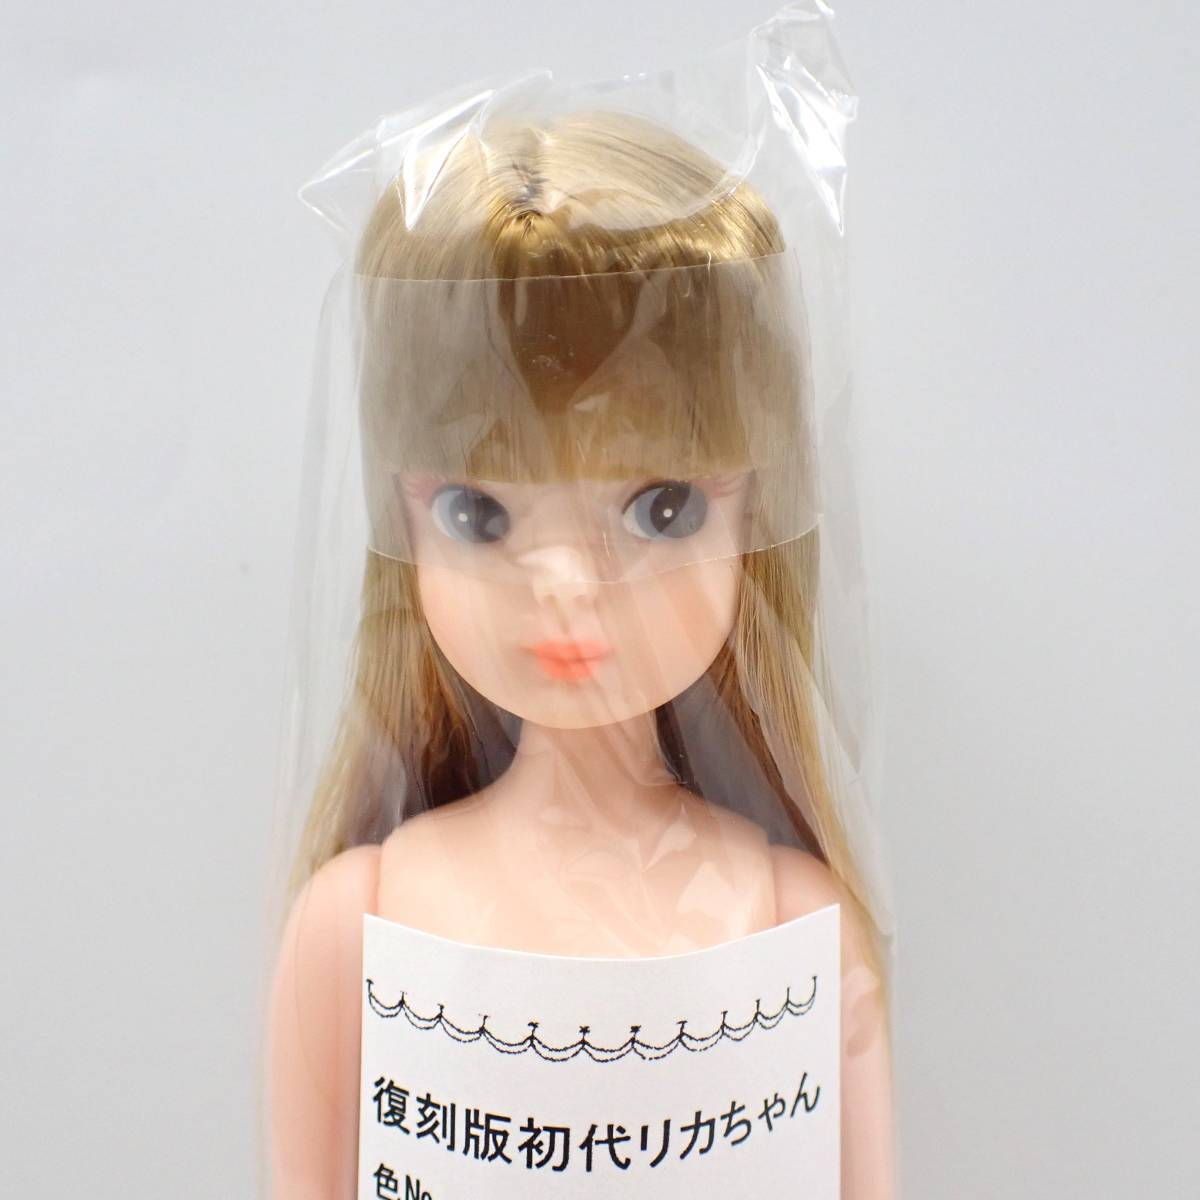 リカちゃんキャッスル☆復刻版初代リカちゃん 22cm ドール 人形 LICCA CASTLE 2248_画像2